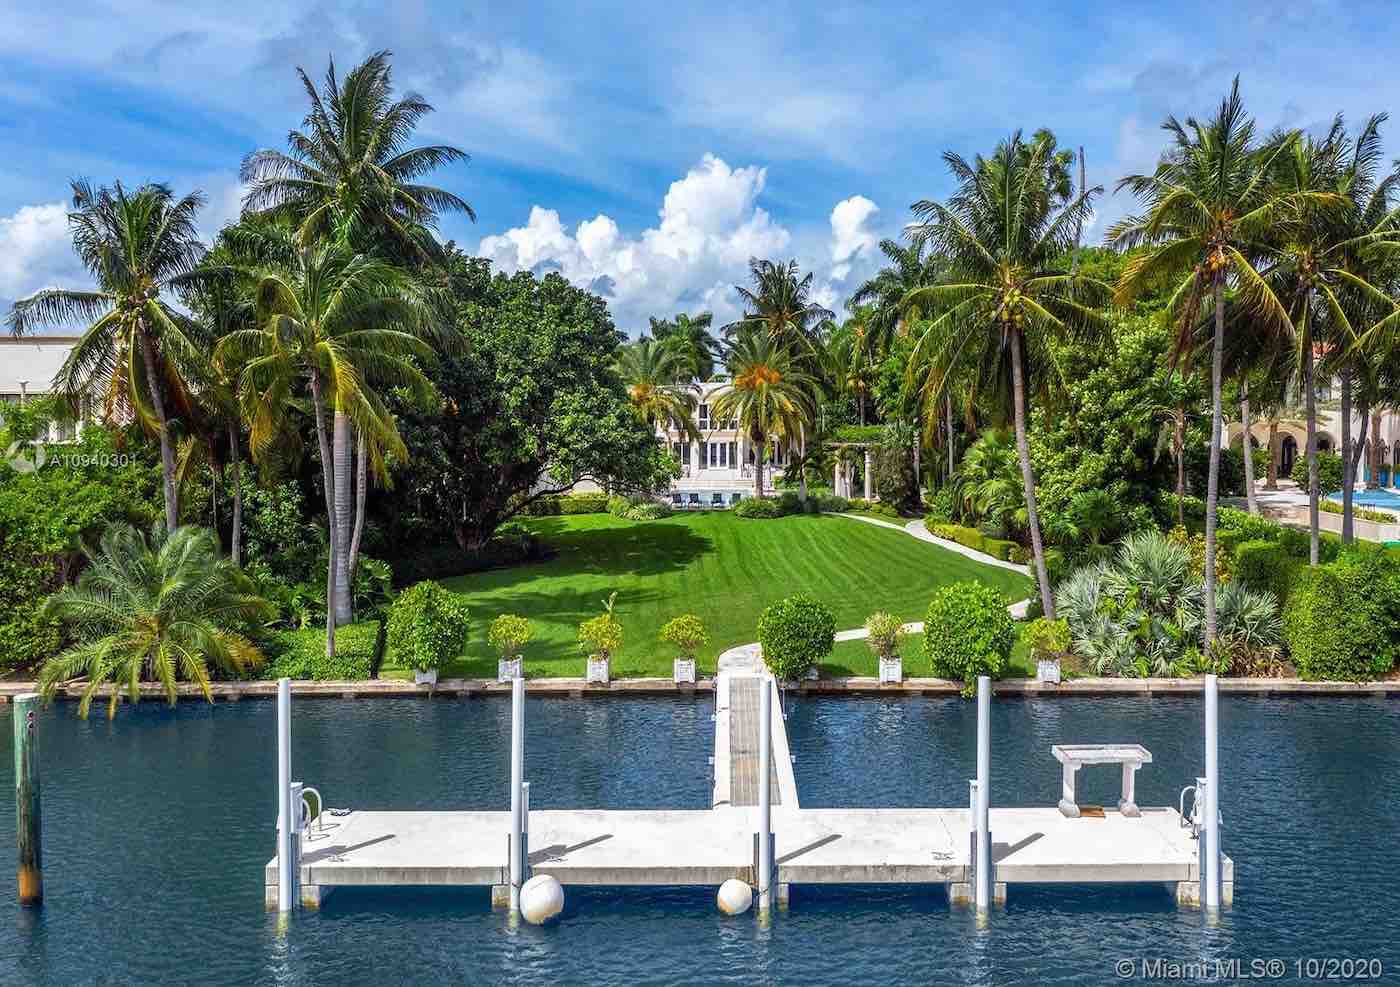 Don Francisco, presentador de "Sábado Gigante", vende su mansión en Florida por 23,8 millones de dólares